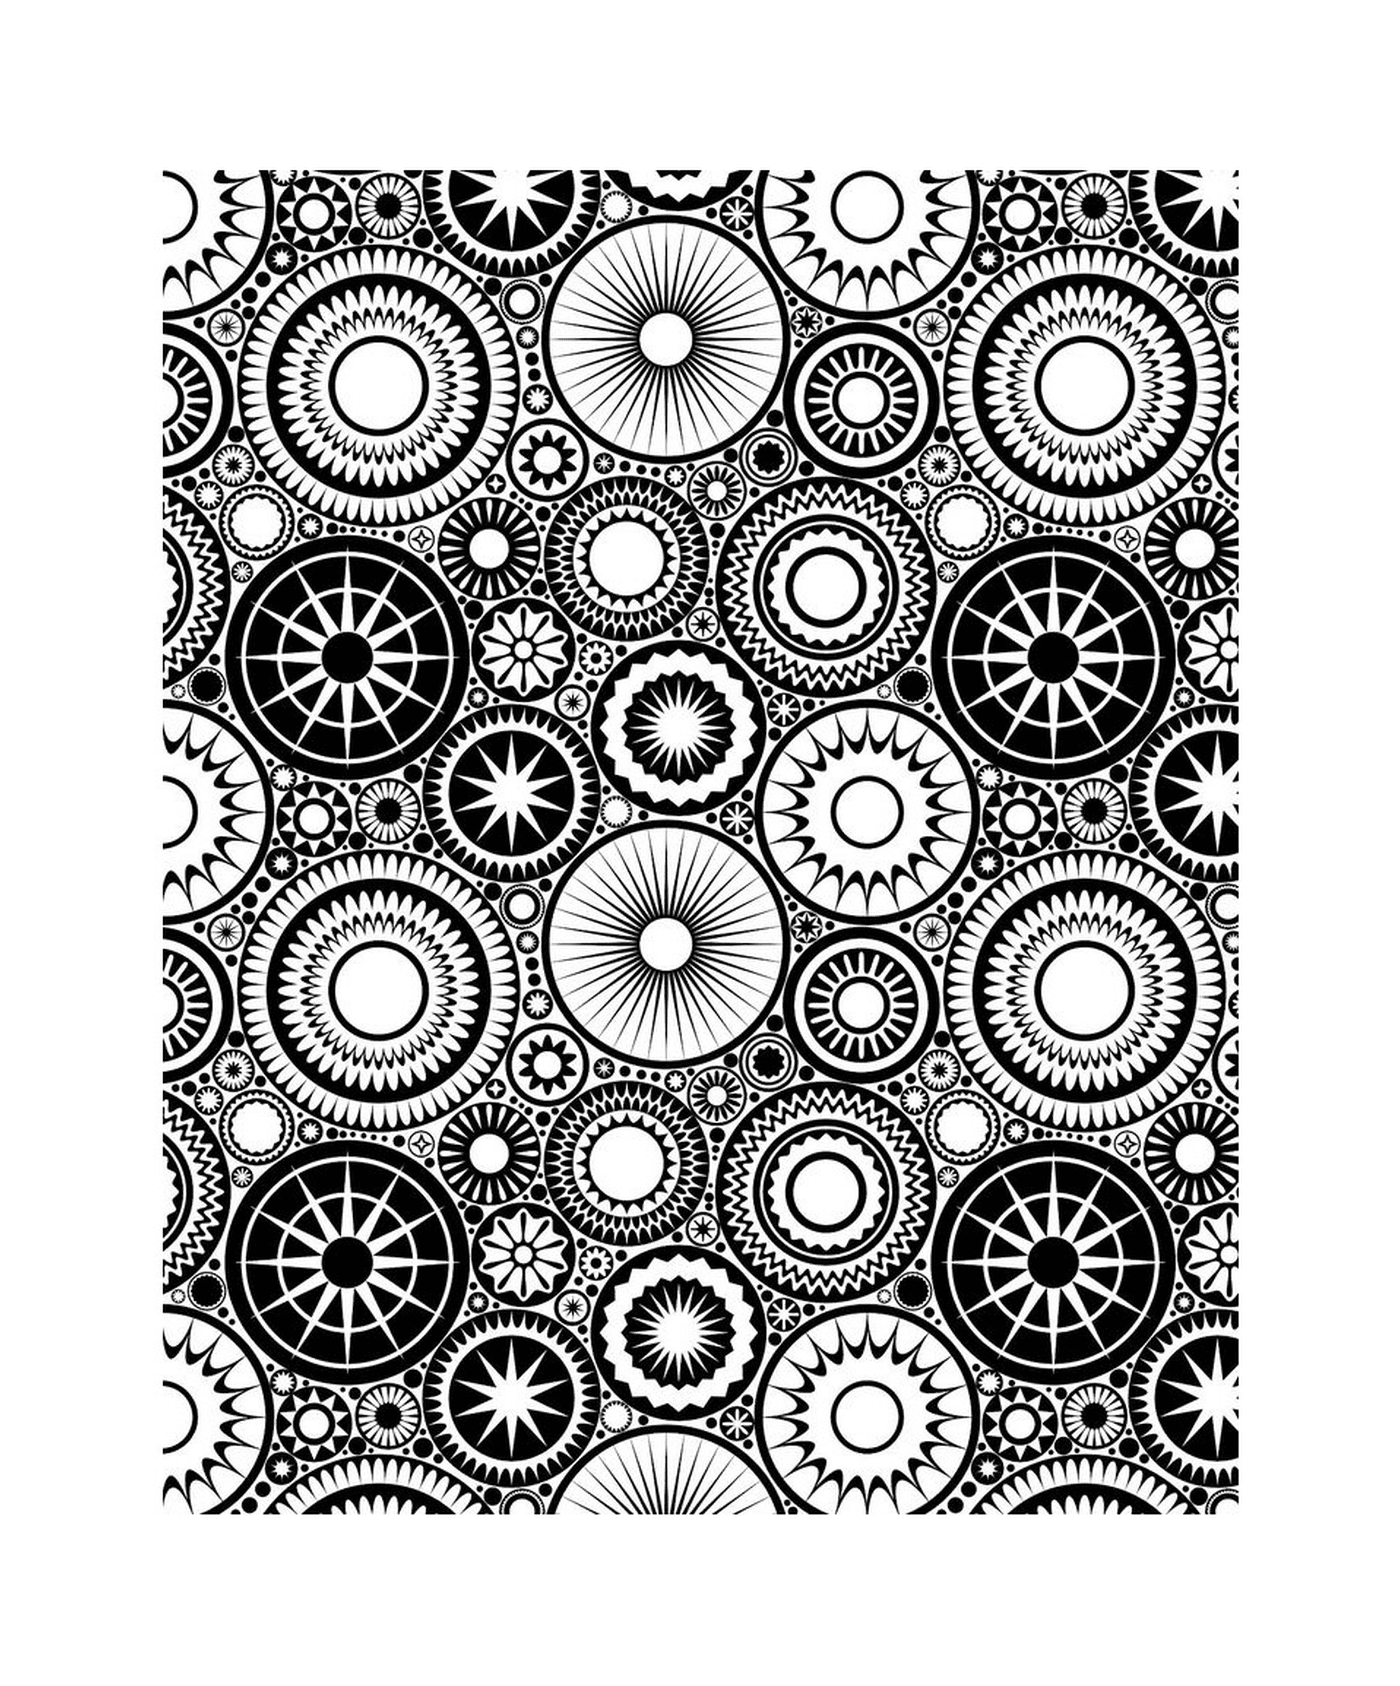  Image of many circles 